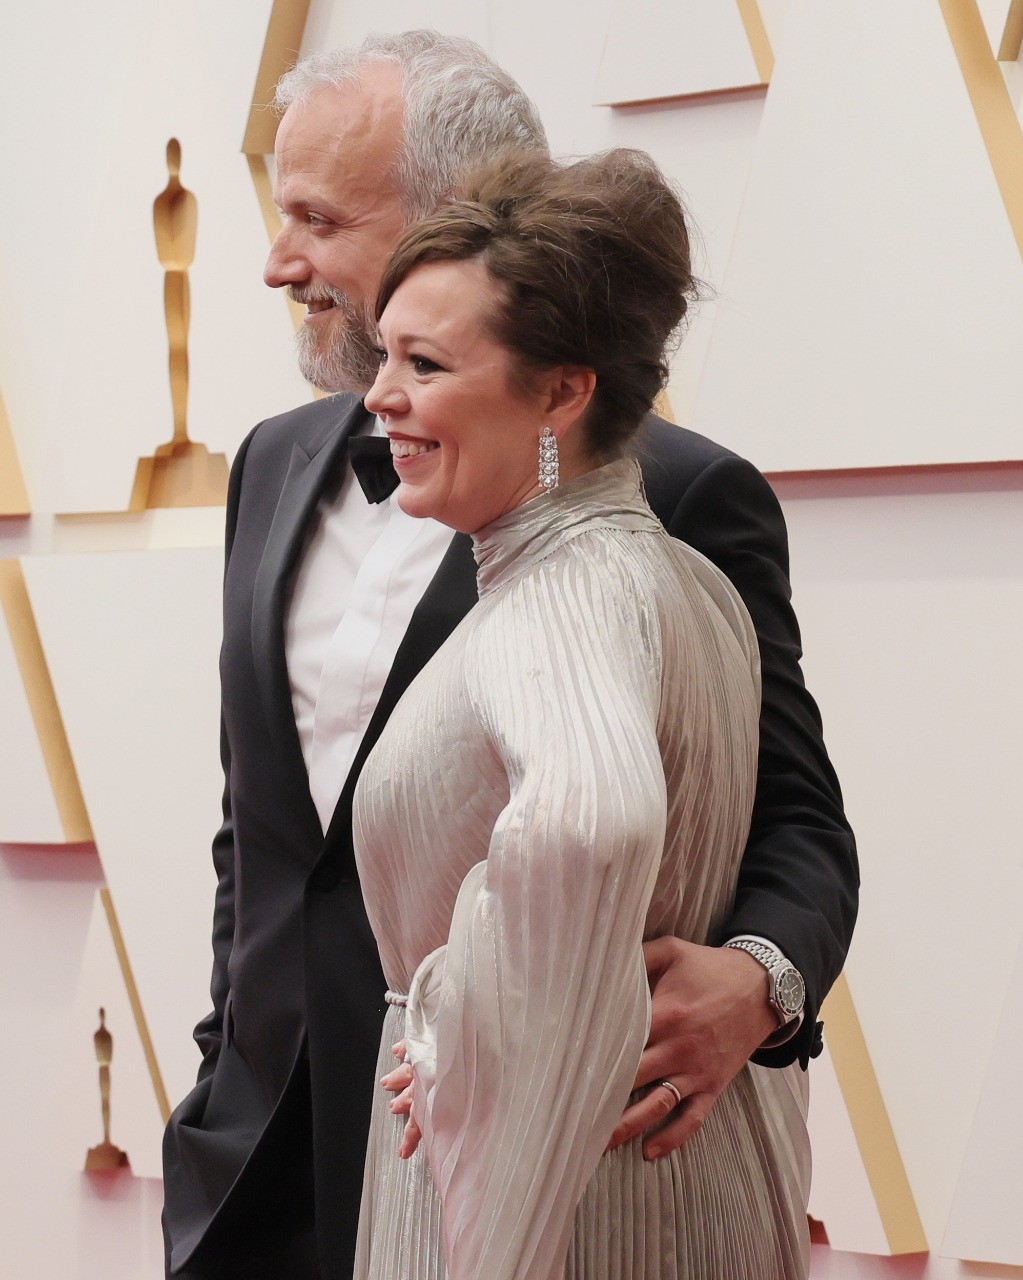 O amor está no ar: casais brilham no tapete vermelho no Oscar 2022  (Foto: Getty Images)